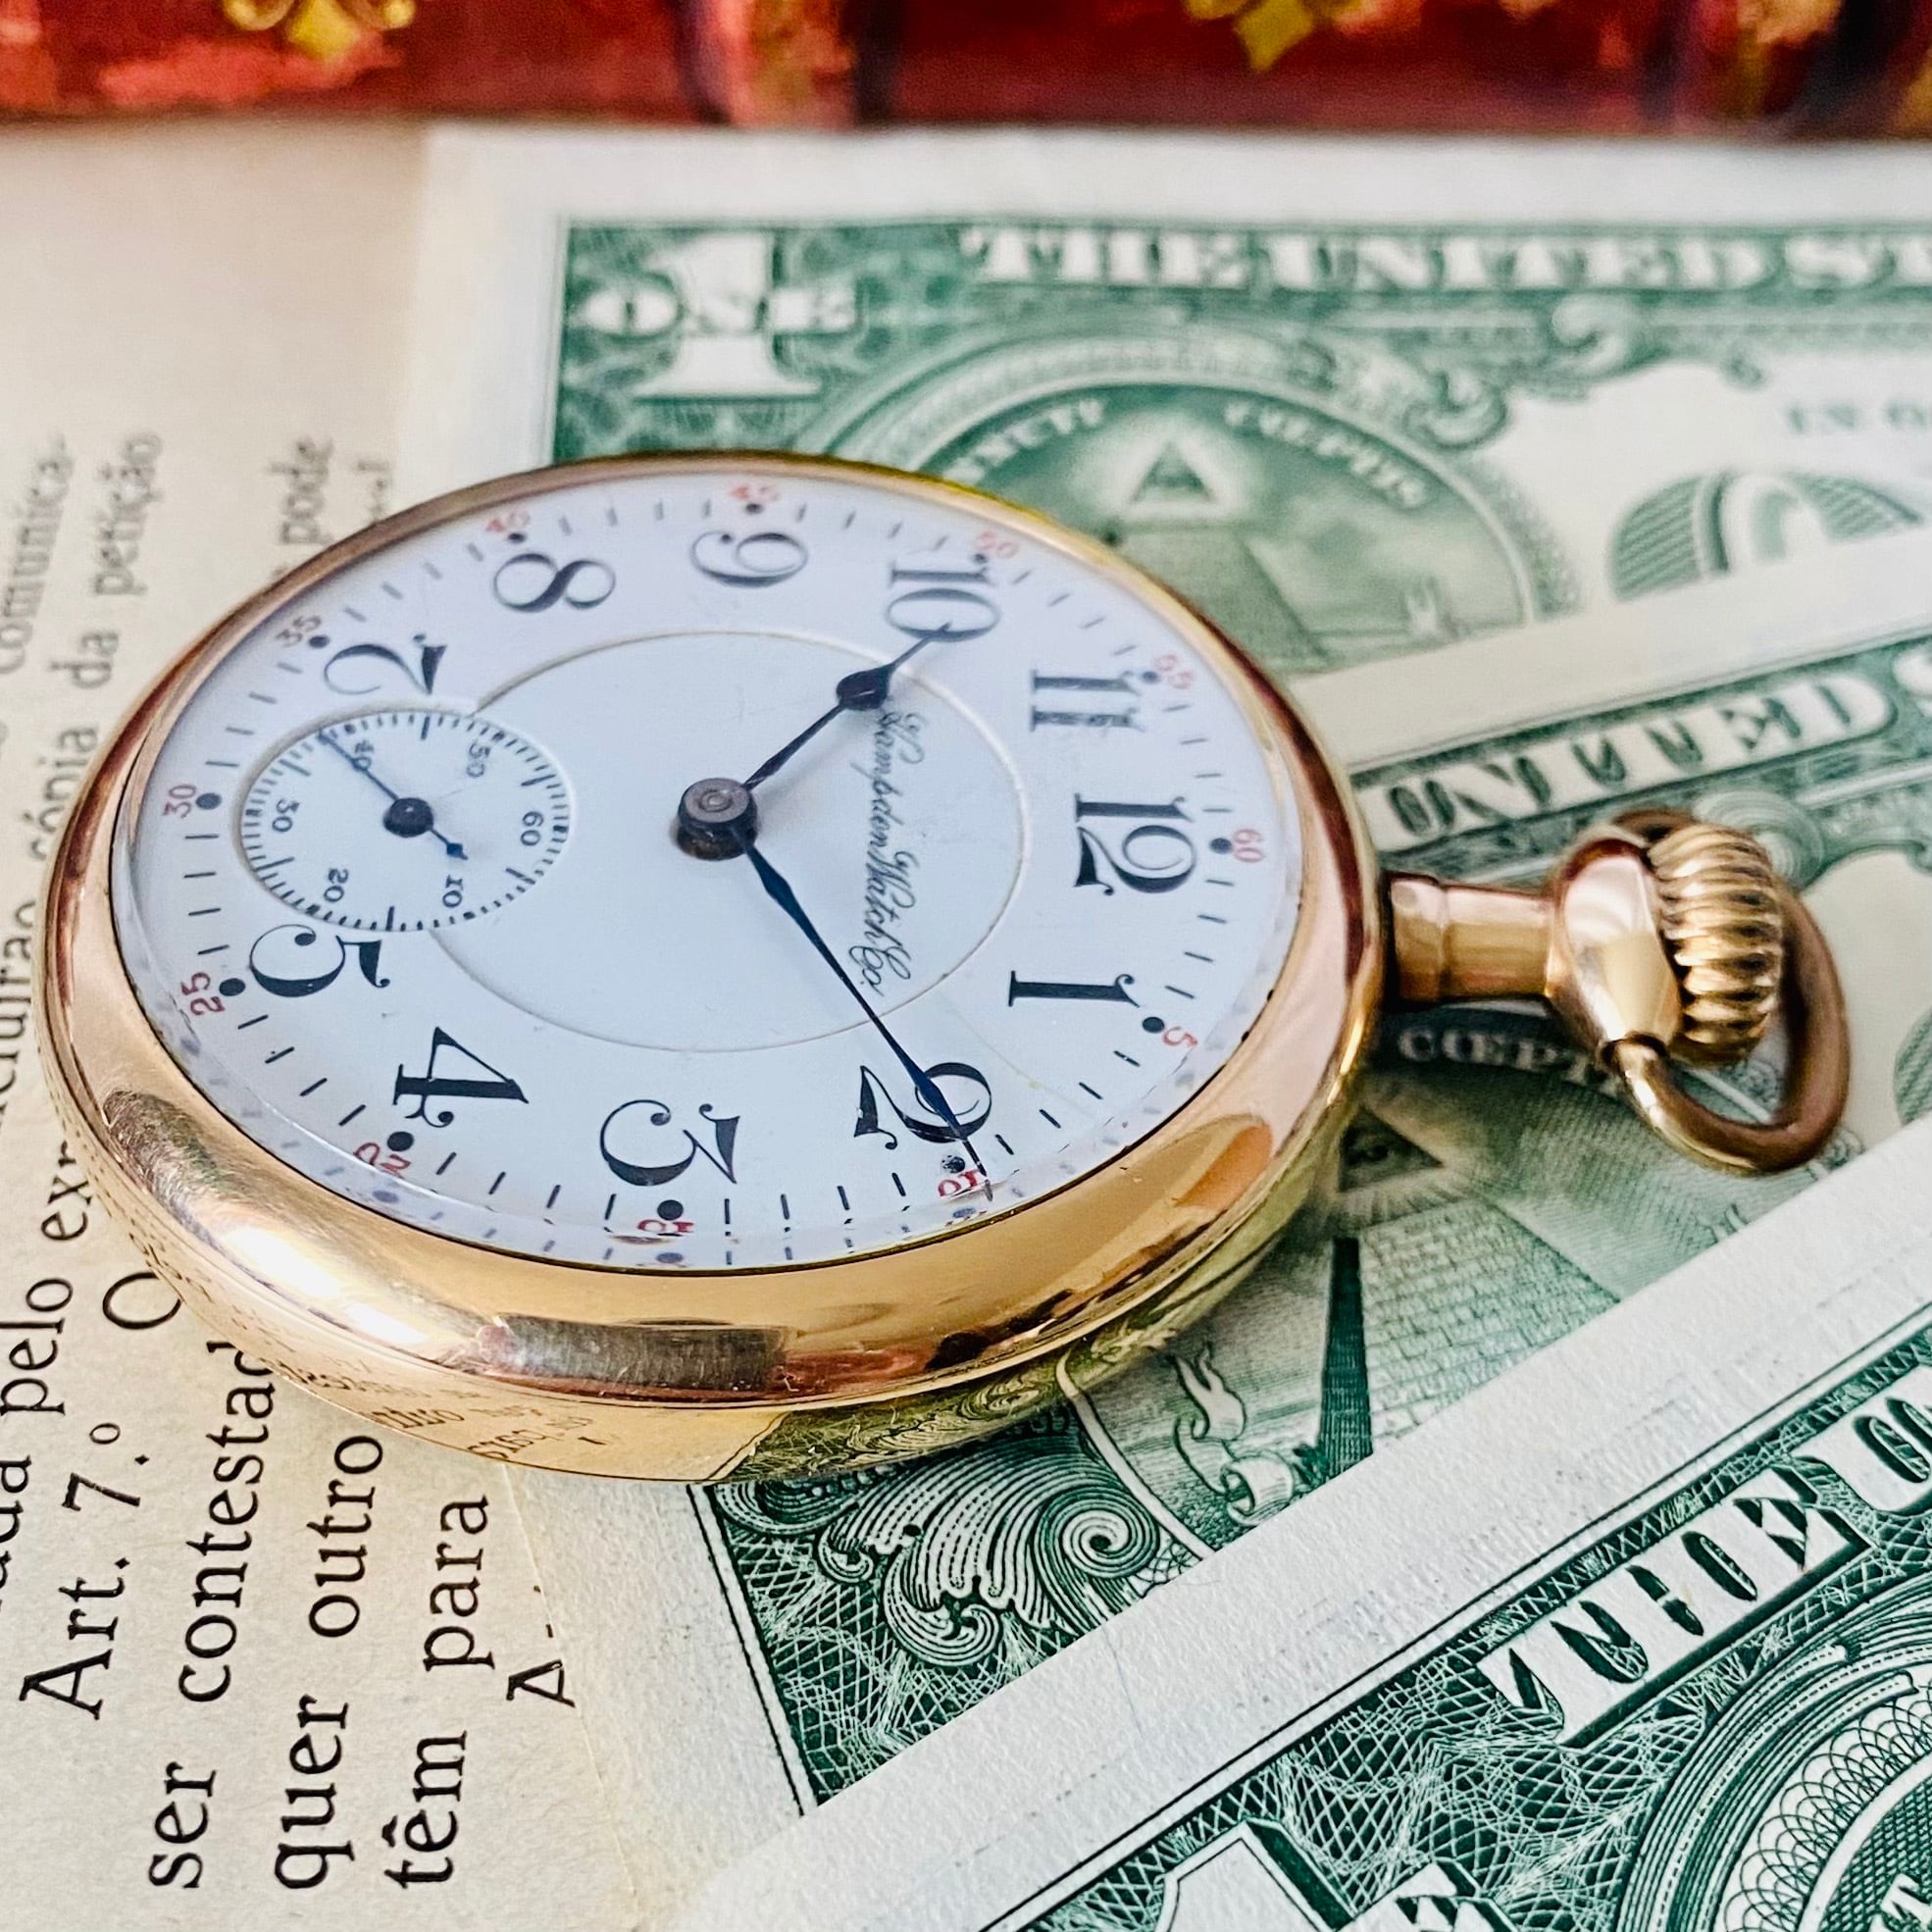 時計【高級懐中時計ハンプデン】Hnampden 1900年代 16S 美品